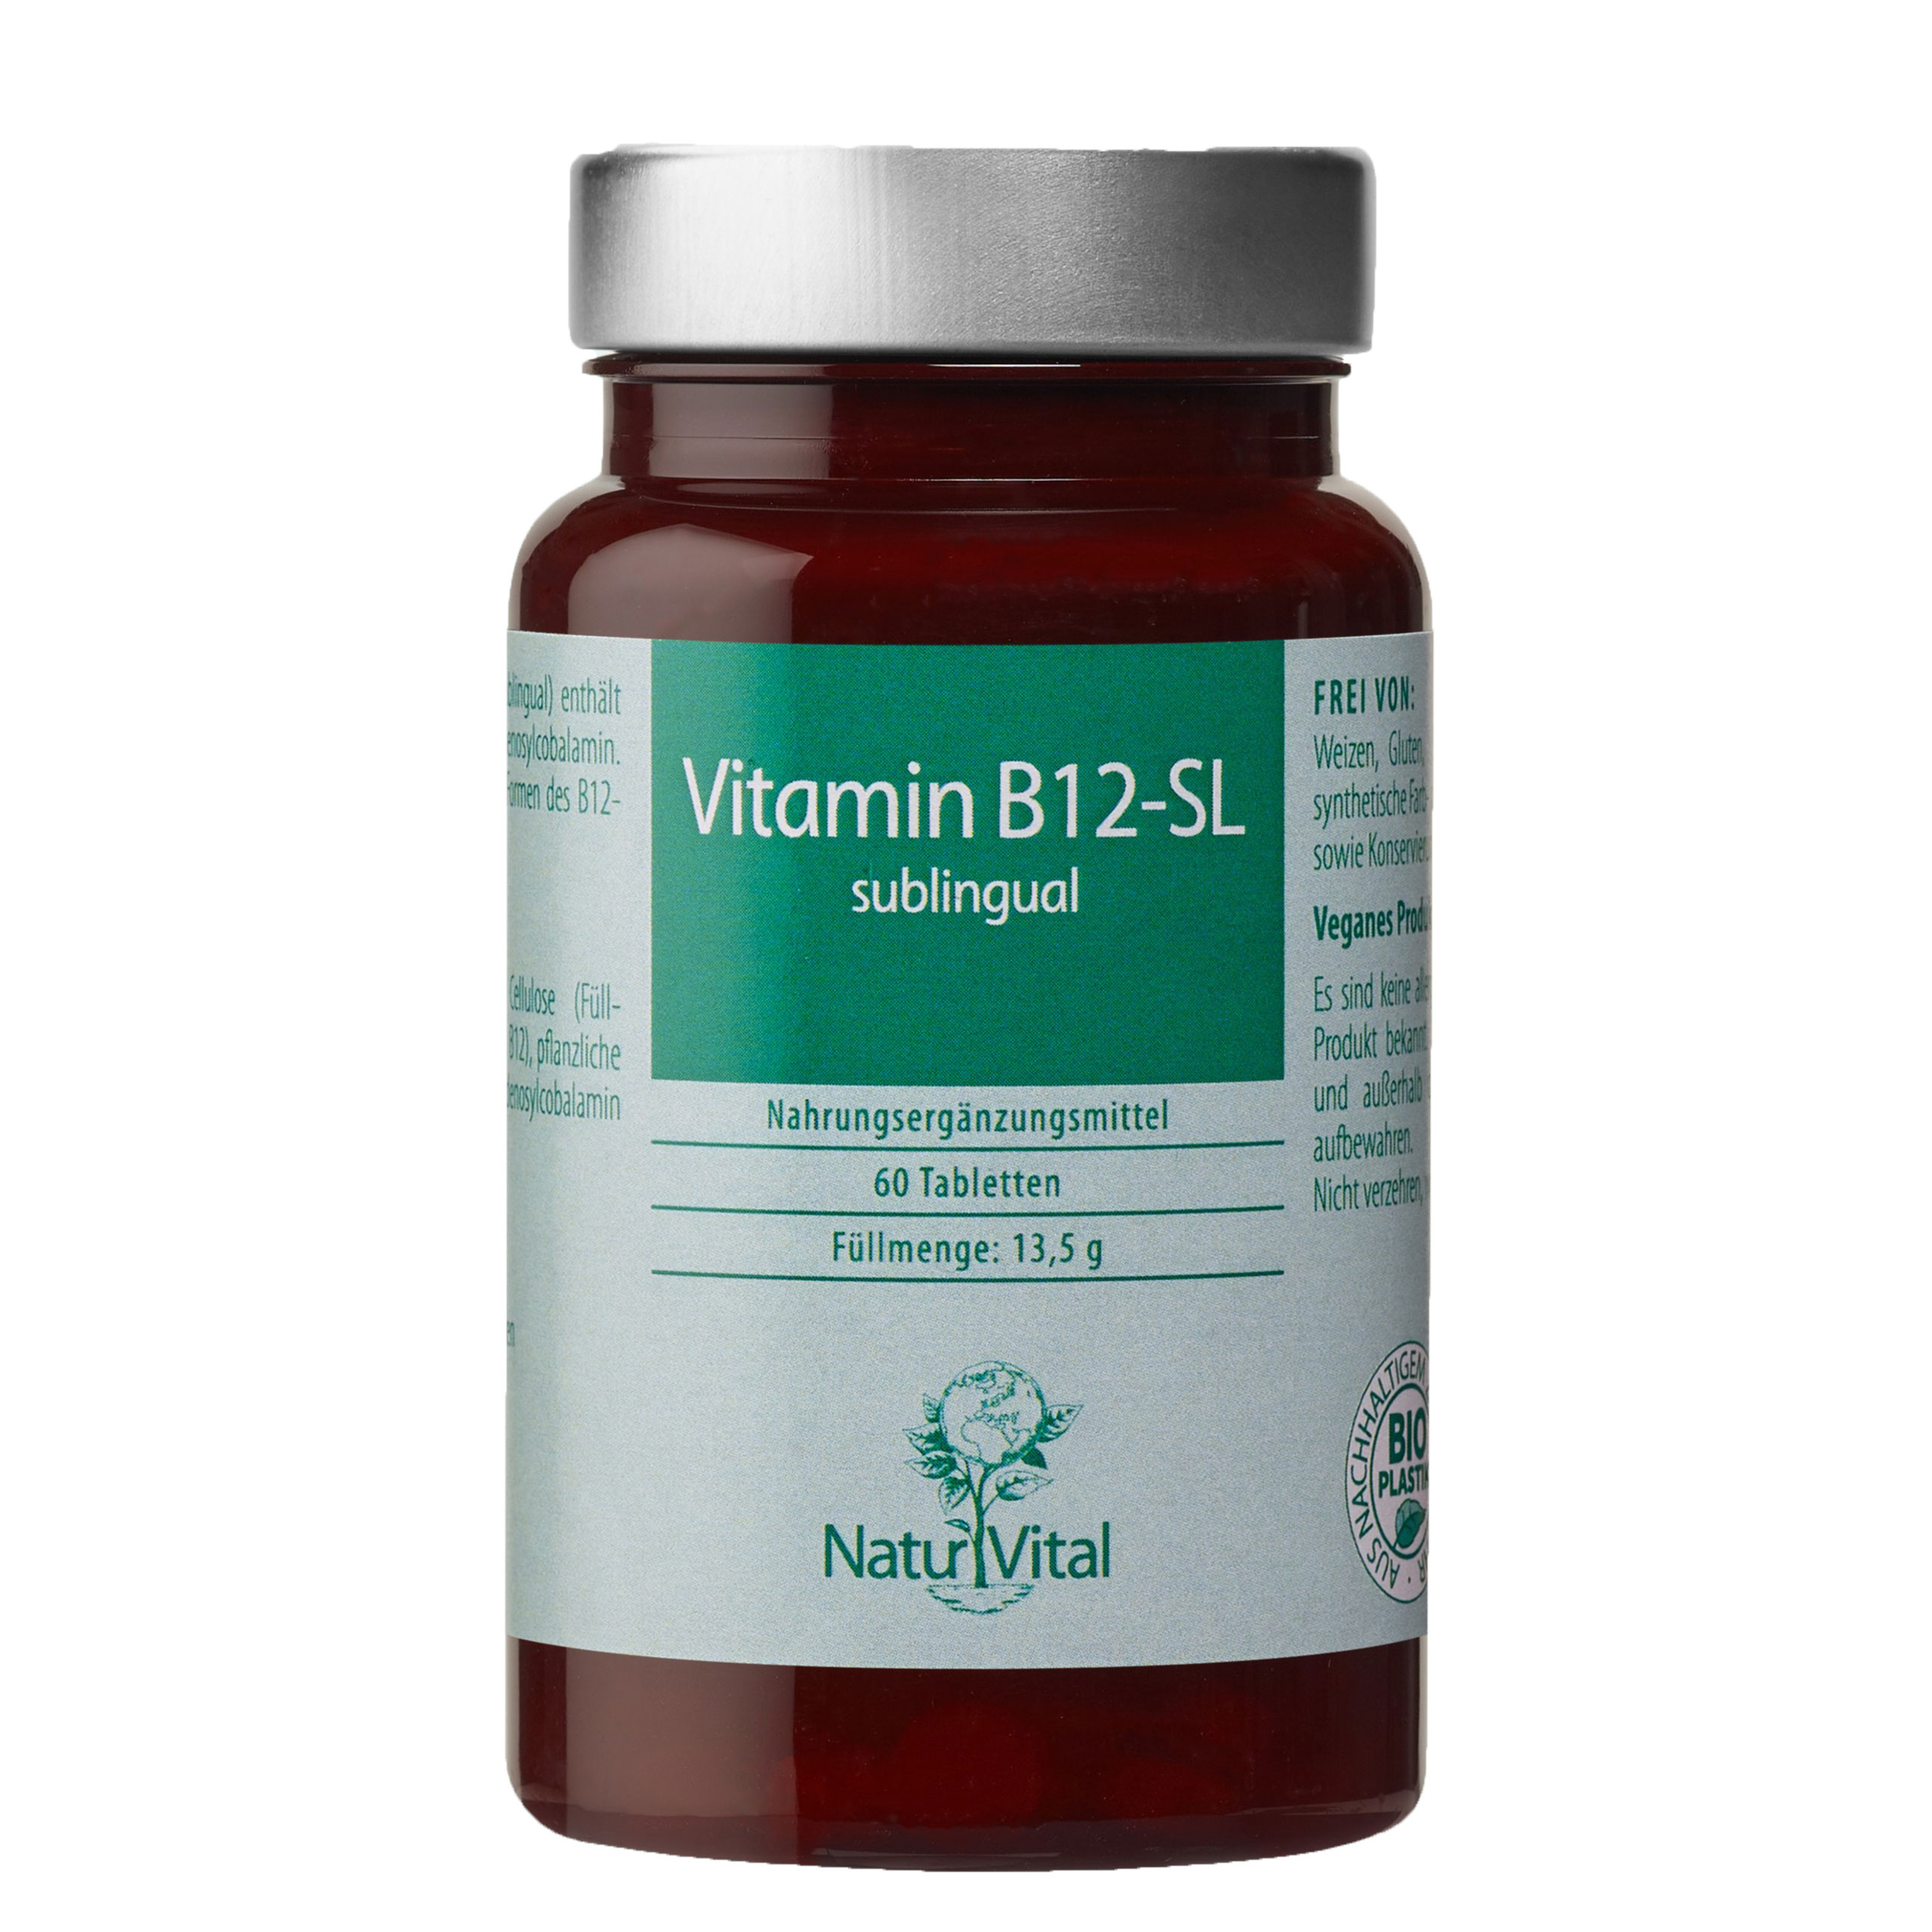 Vitamin B12 SL von Natur Vital beinhaltet 60 Tabletten